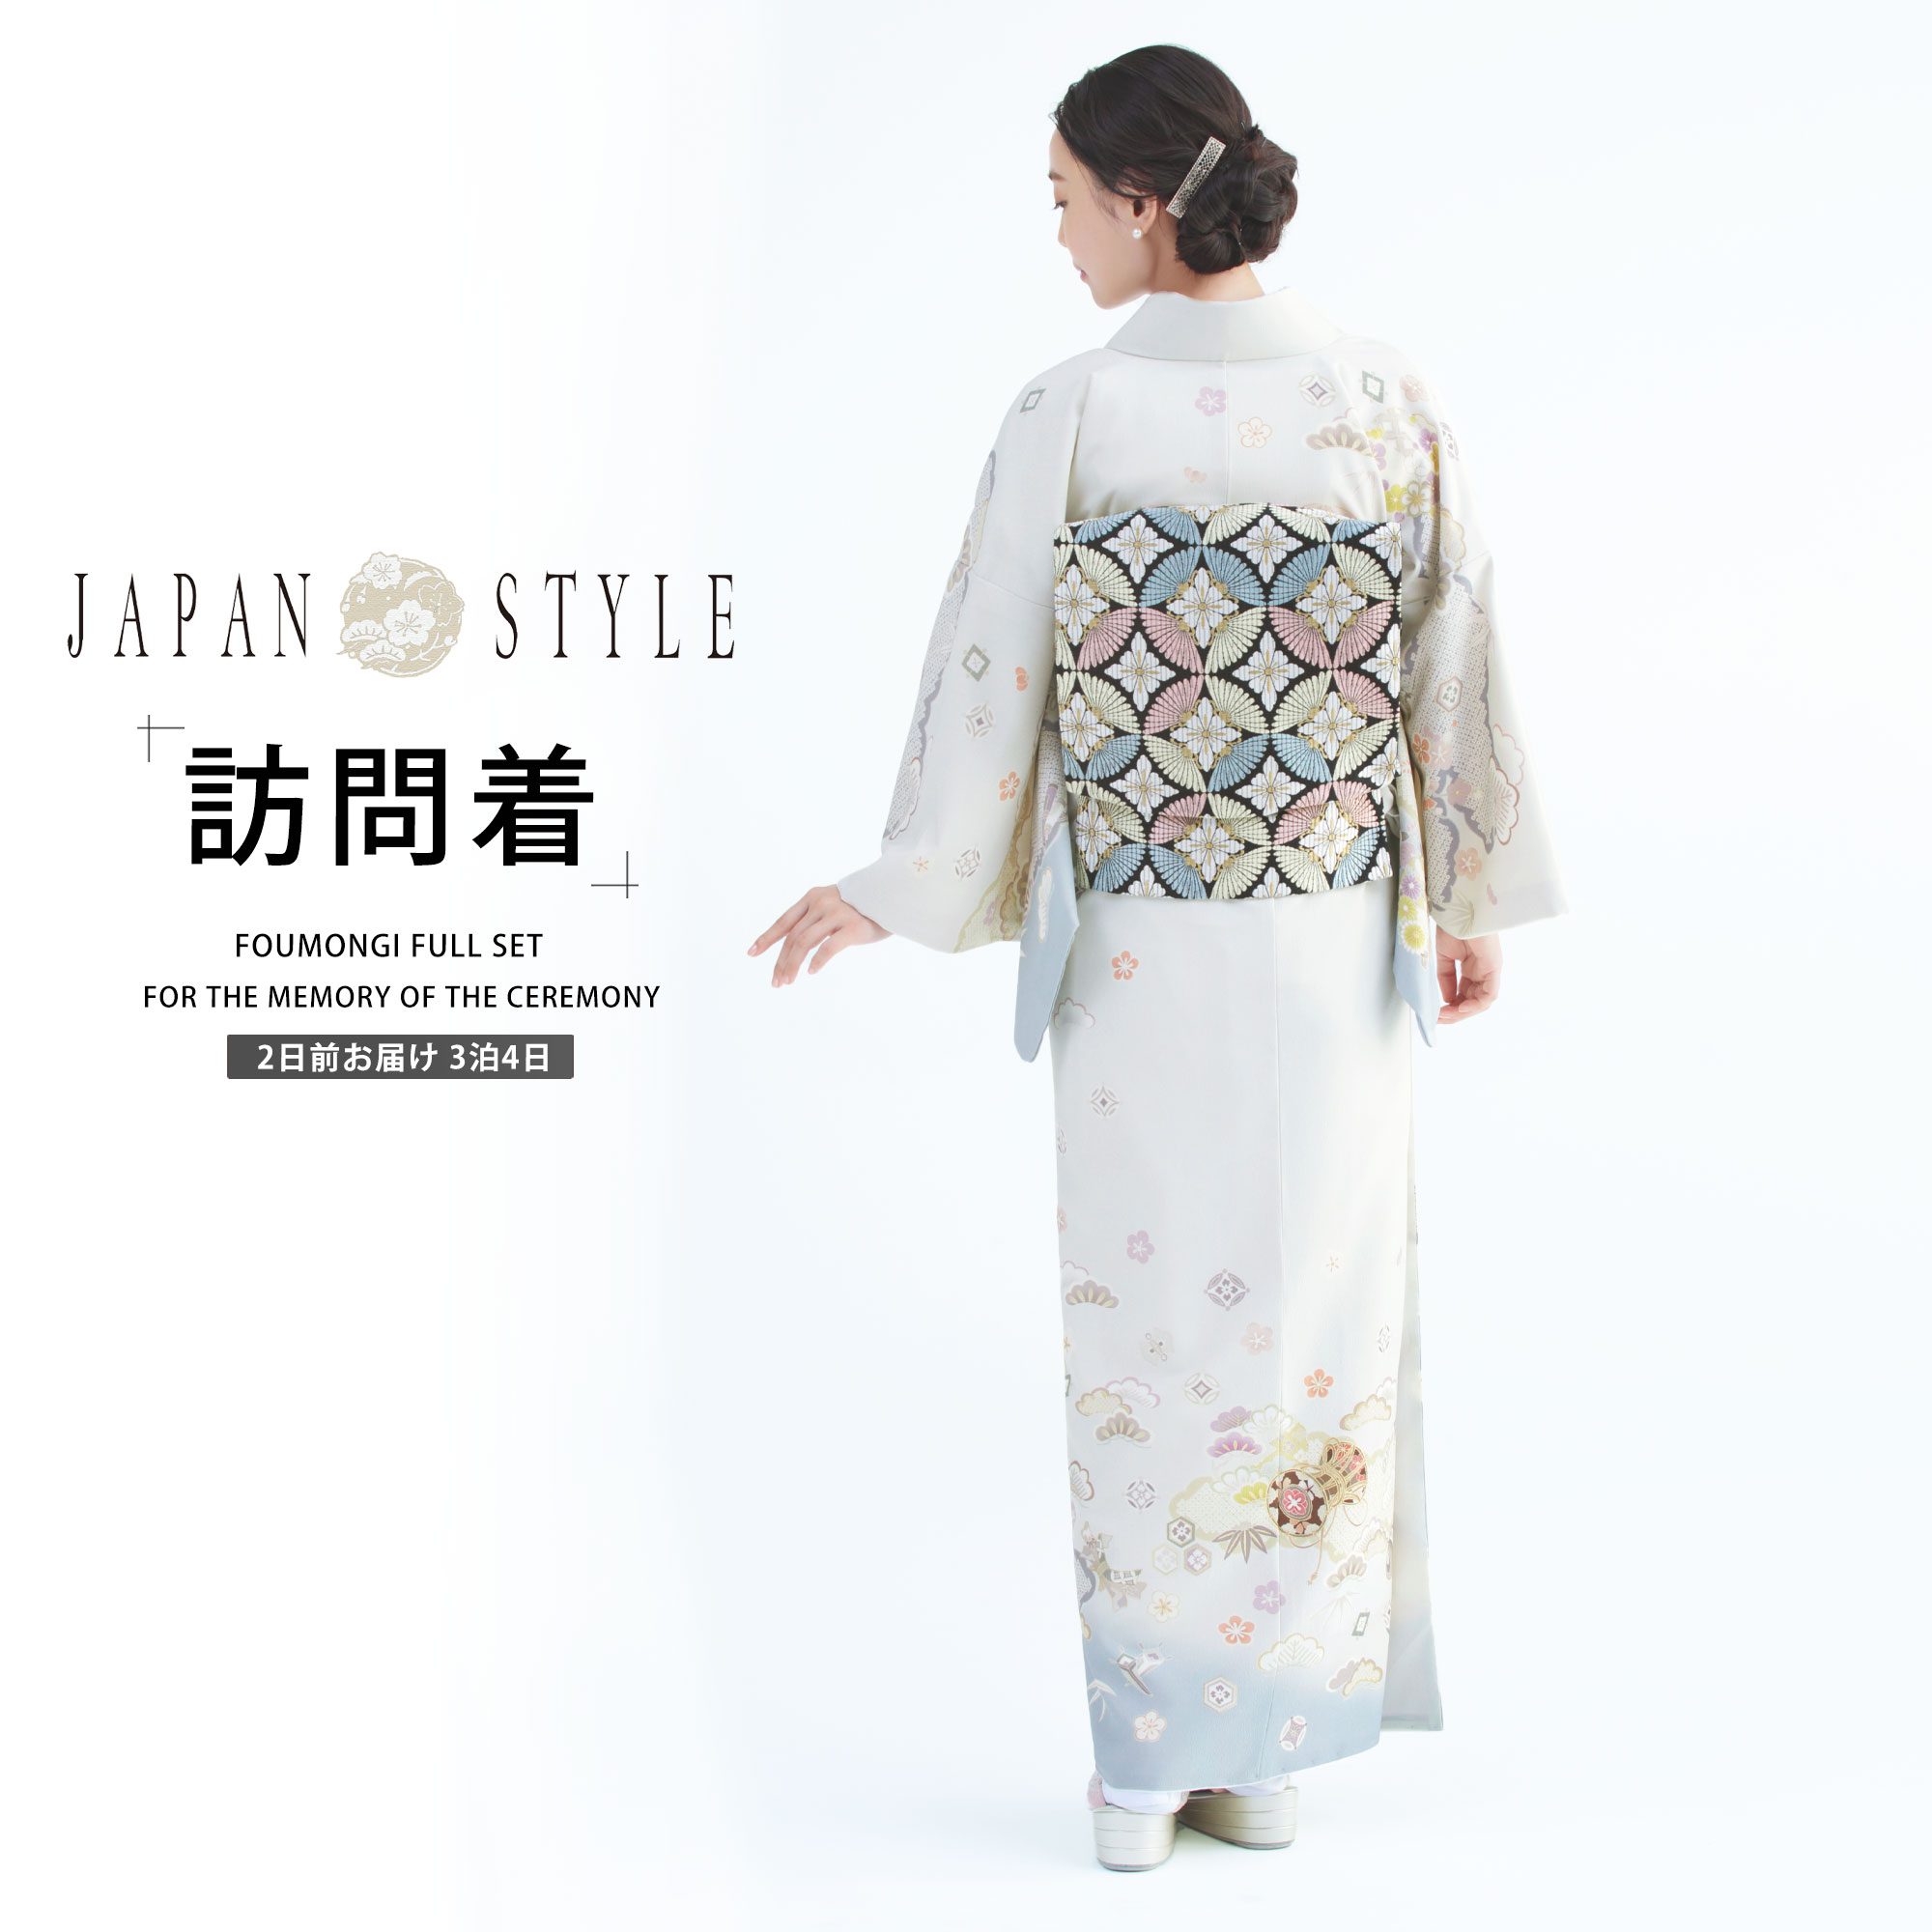 JAPAN STYLE 訪問着 レンタル 着物レンタル 貸衣装 フルセット 【画像